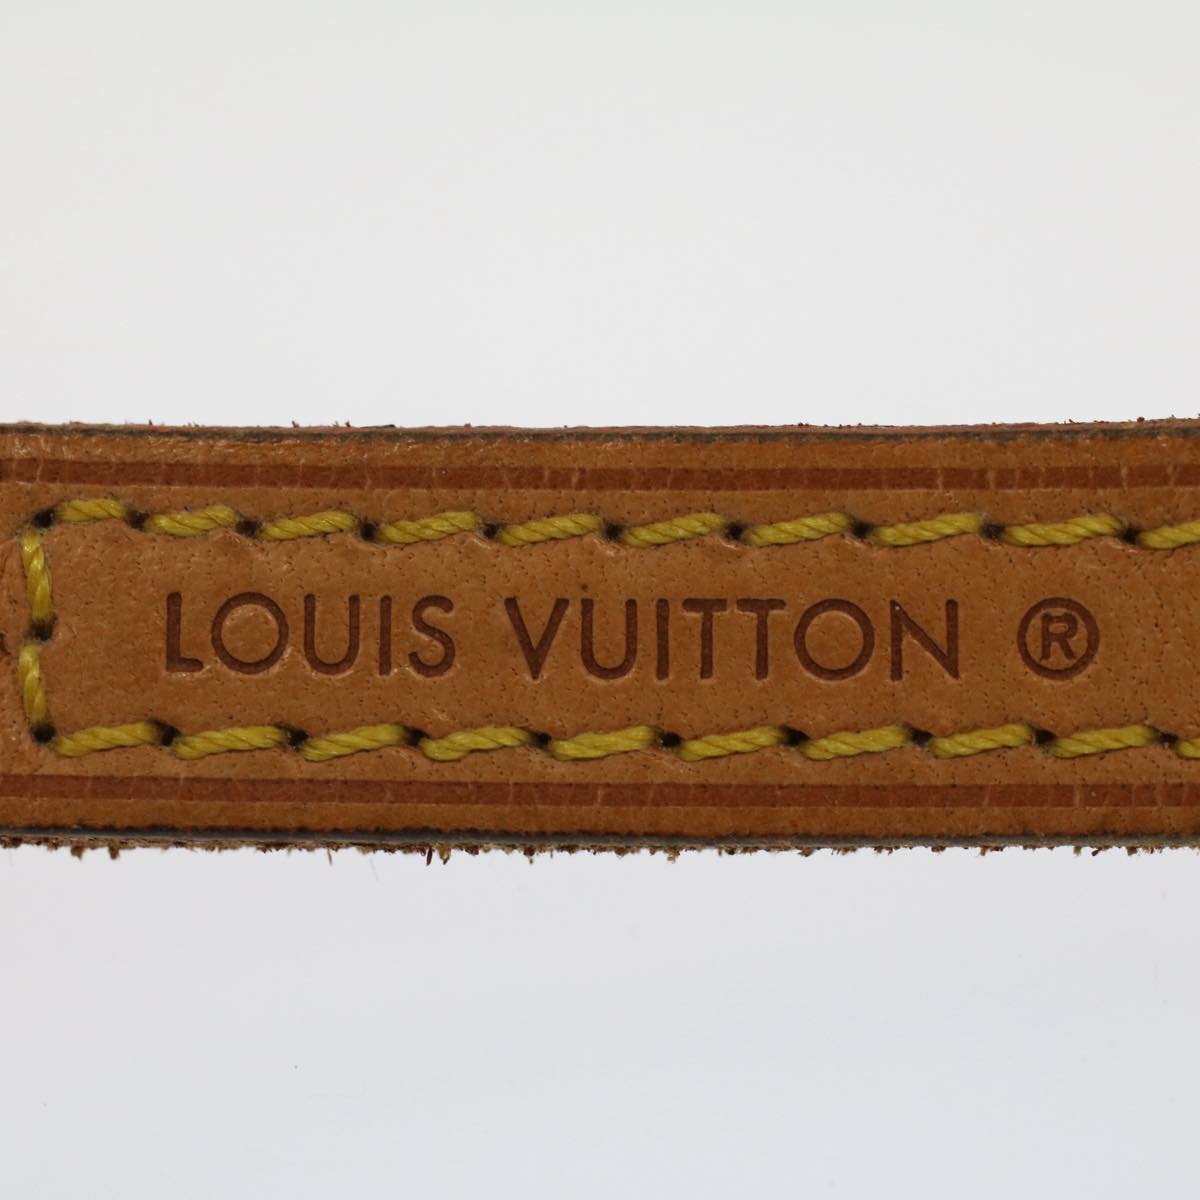 LOUIS VUITTON Shoulder Strap Leather 44.5"" Beige LV Auth 52299